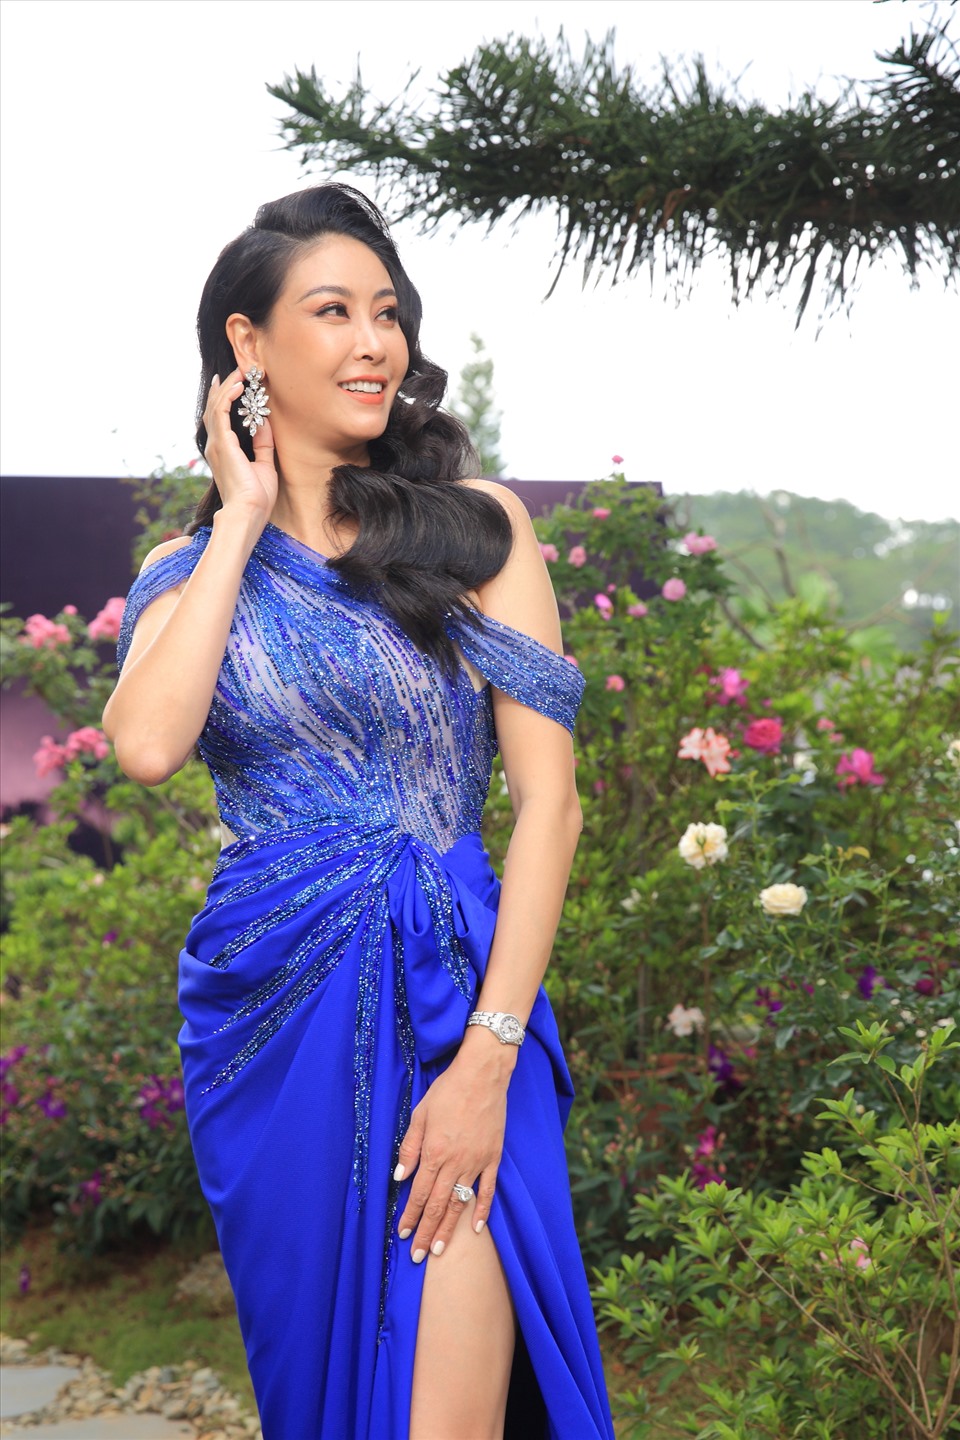 Hoa hậu Hà Kiều Anh sẽ là một trong những ban giám khảo quyền lực. Ảnh: Phú Trần